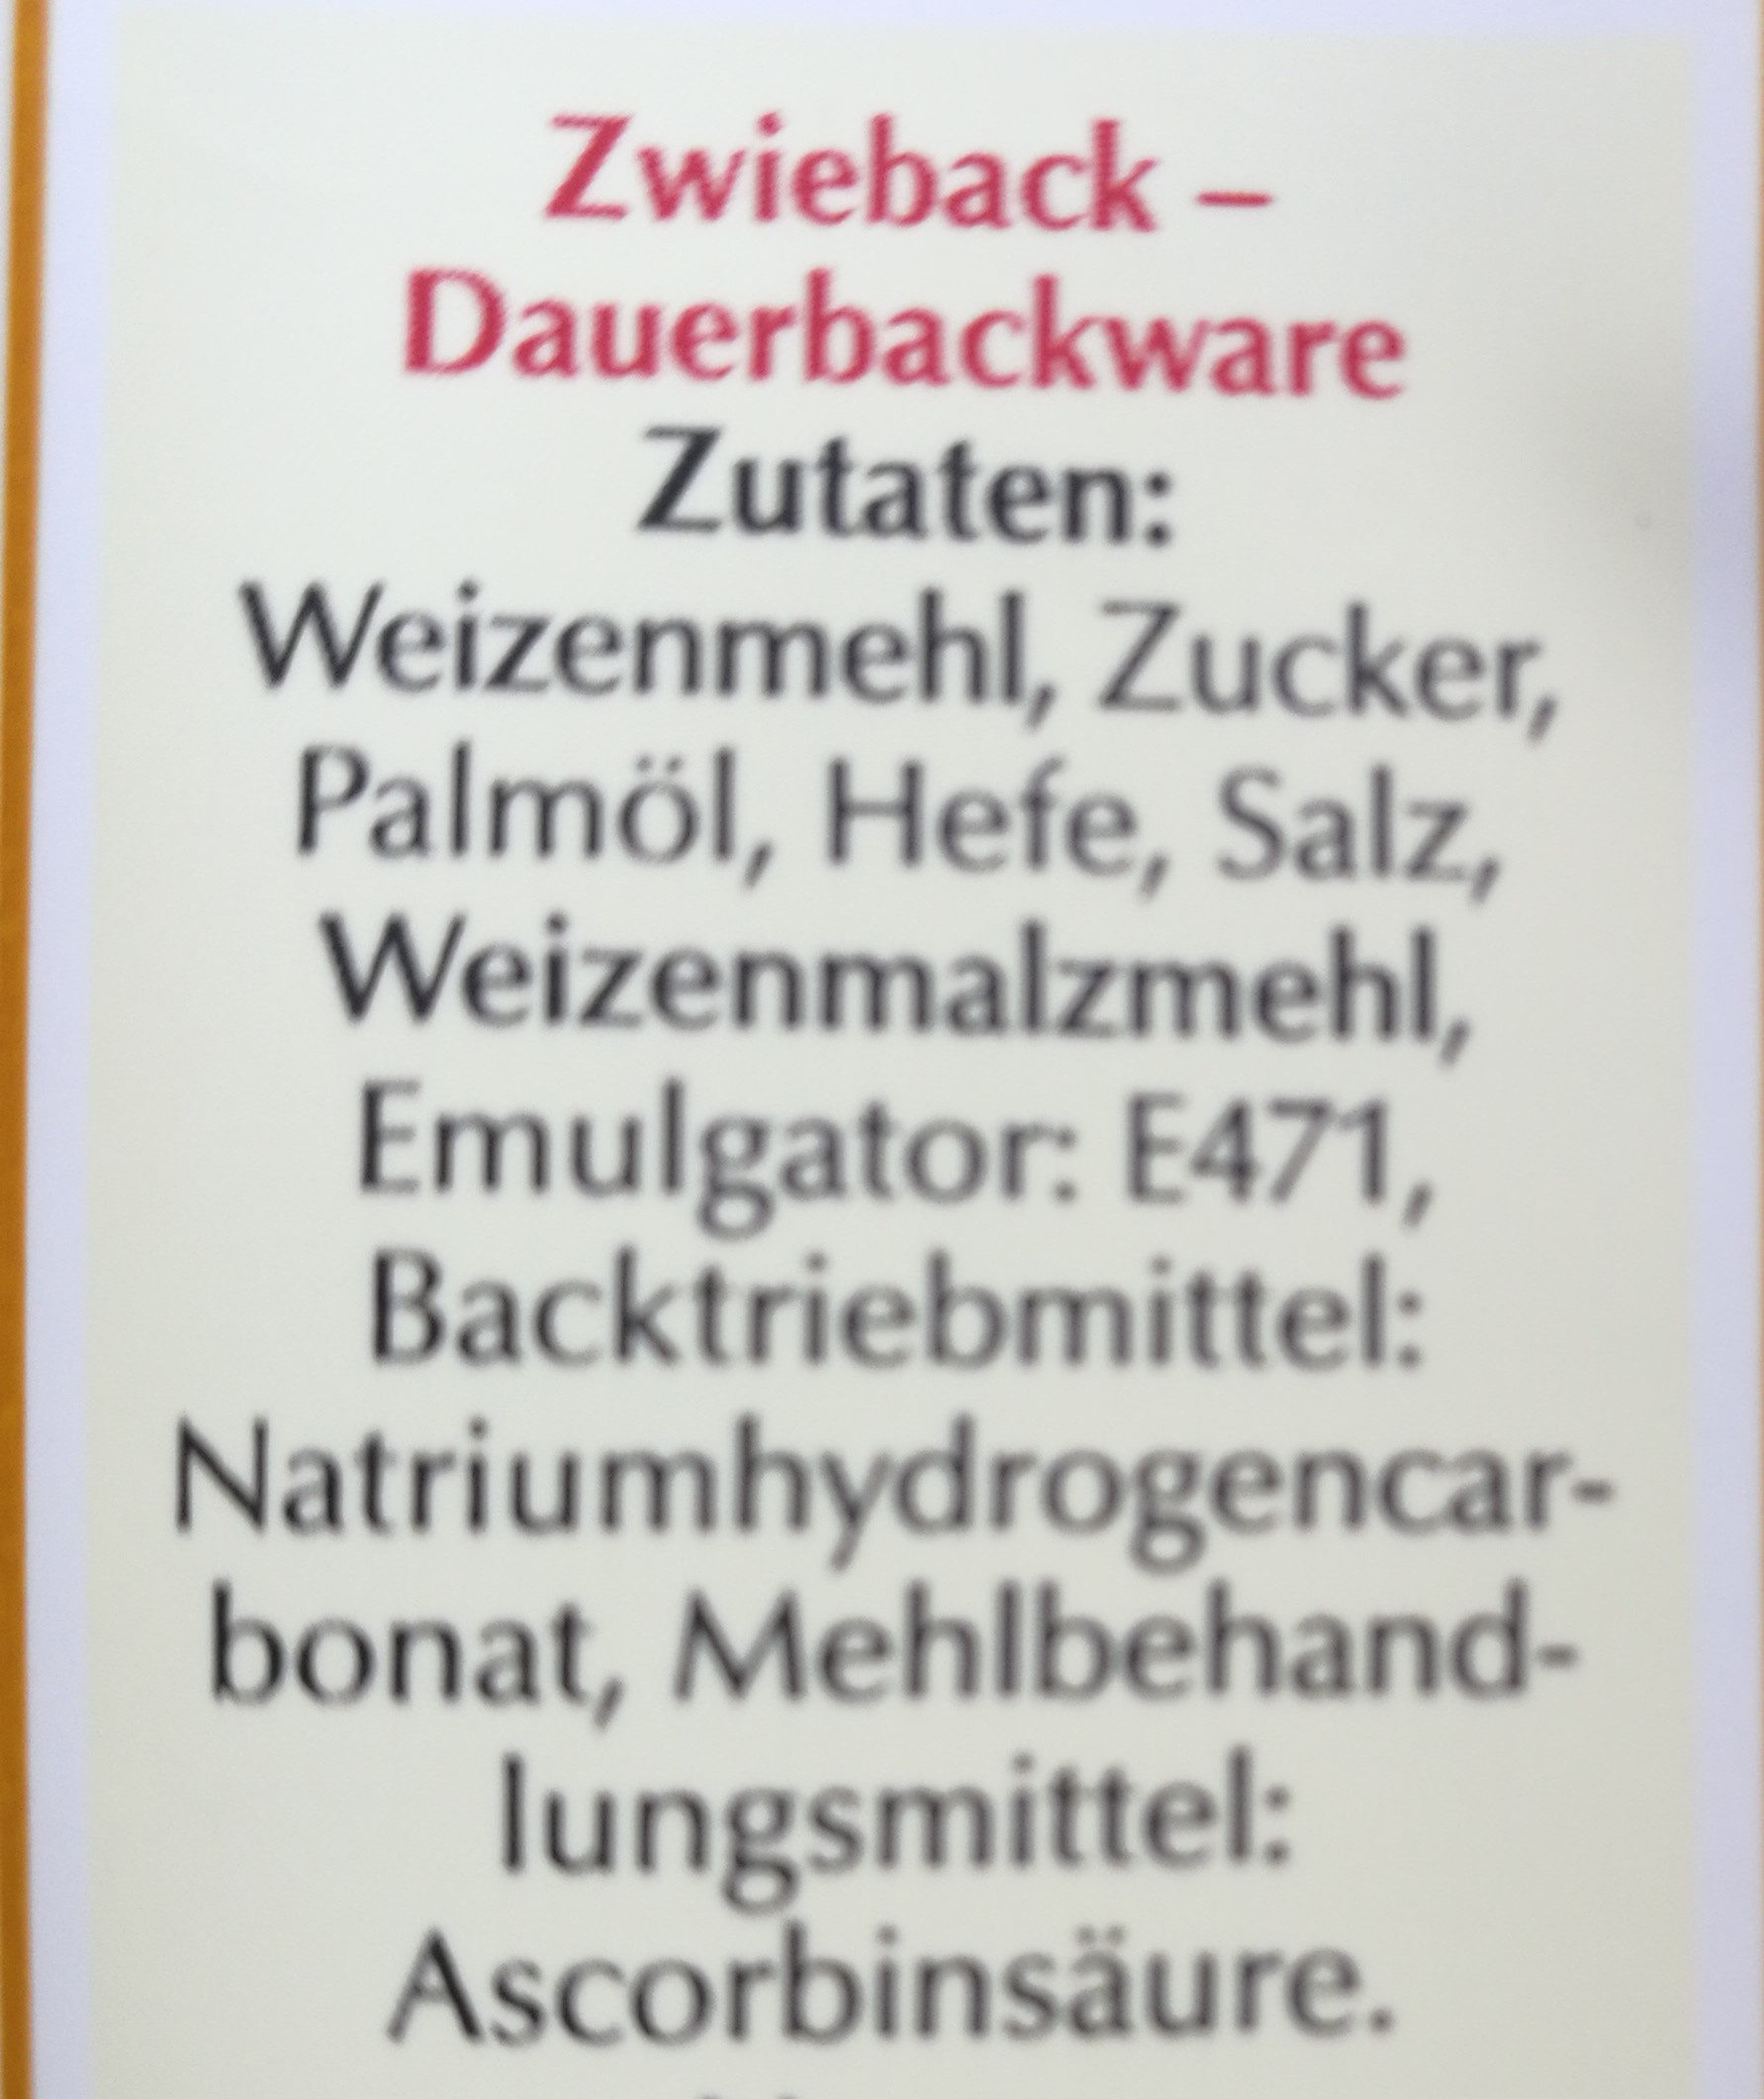 Feldbacher Zwieback - Ingredienti - de